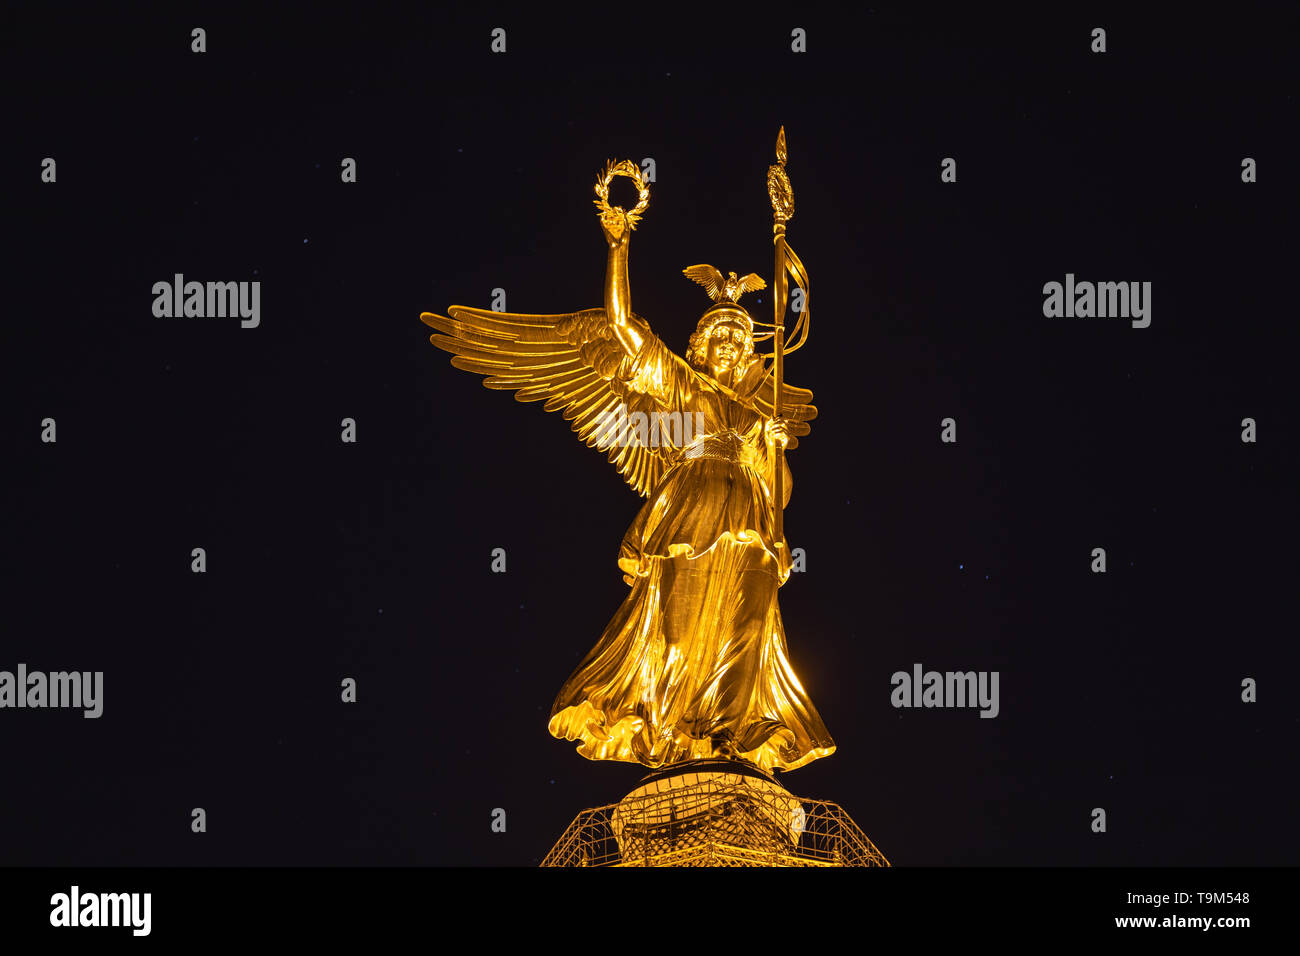 Nacht Blick auf die goldene Statue von Victoria auf der Siegessäule am Großen Stern Platz in Berlin, Deutschland Stockfoto